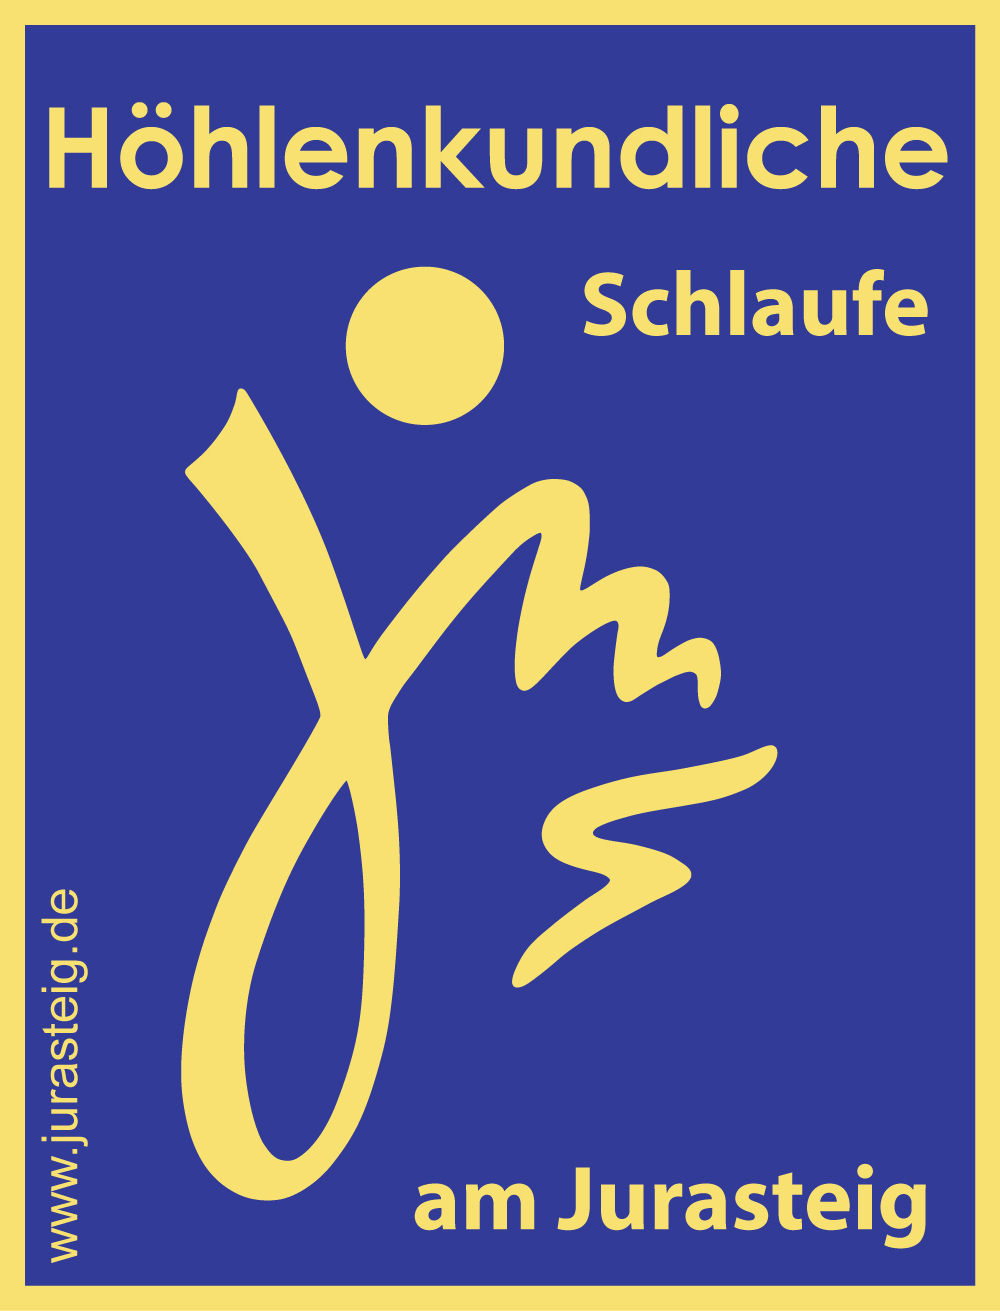 marker of the Höhlenkundliche-loop